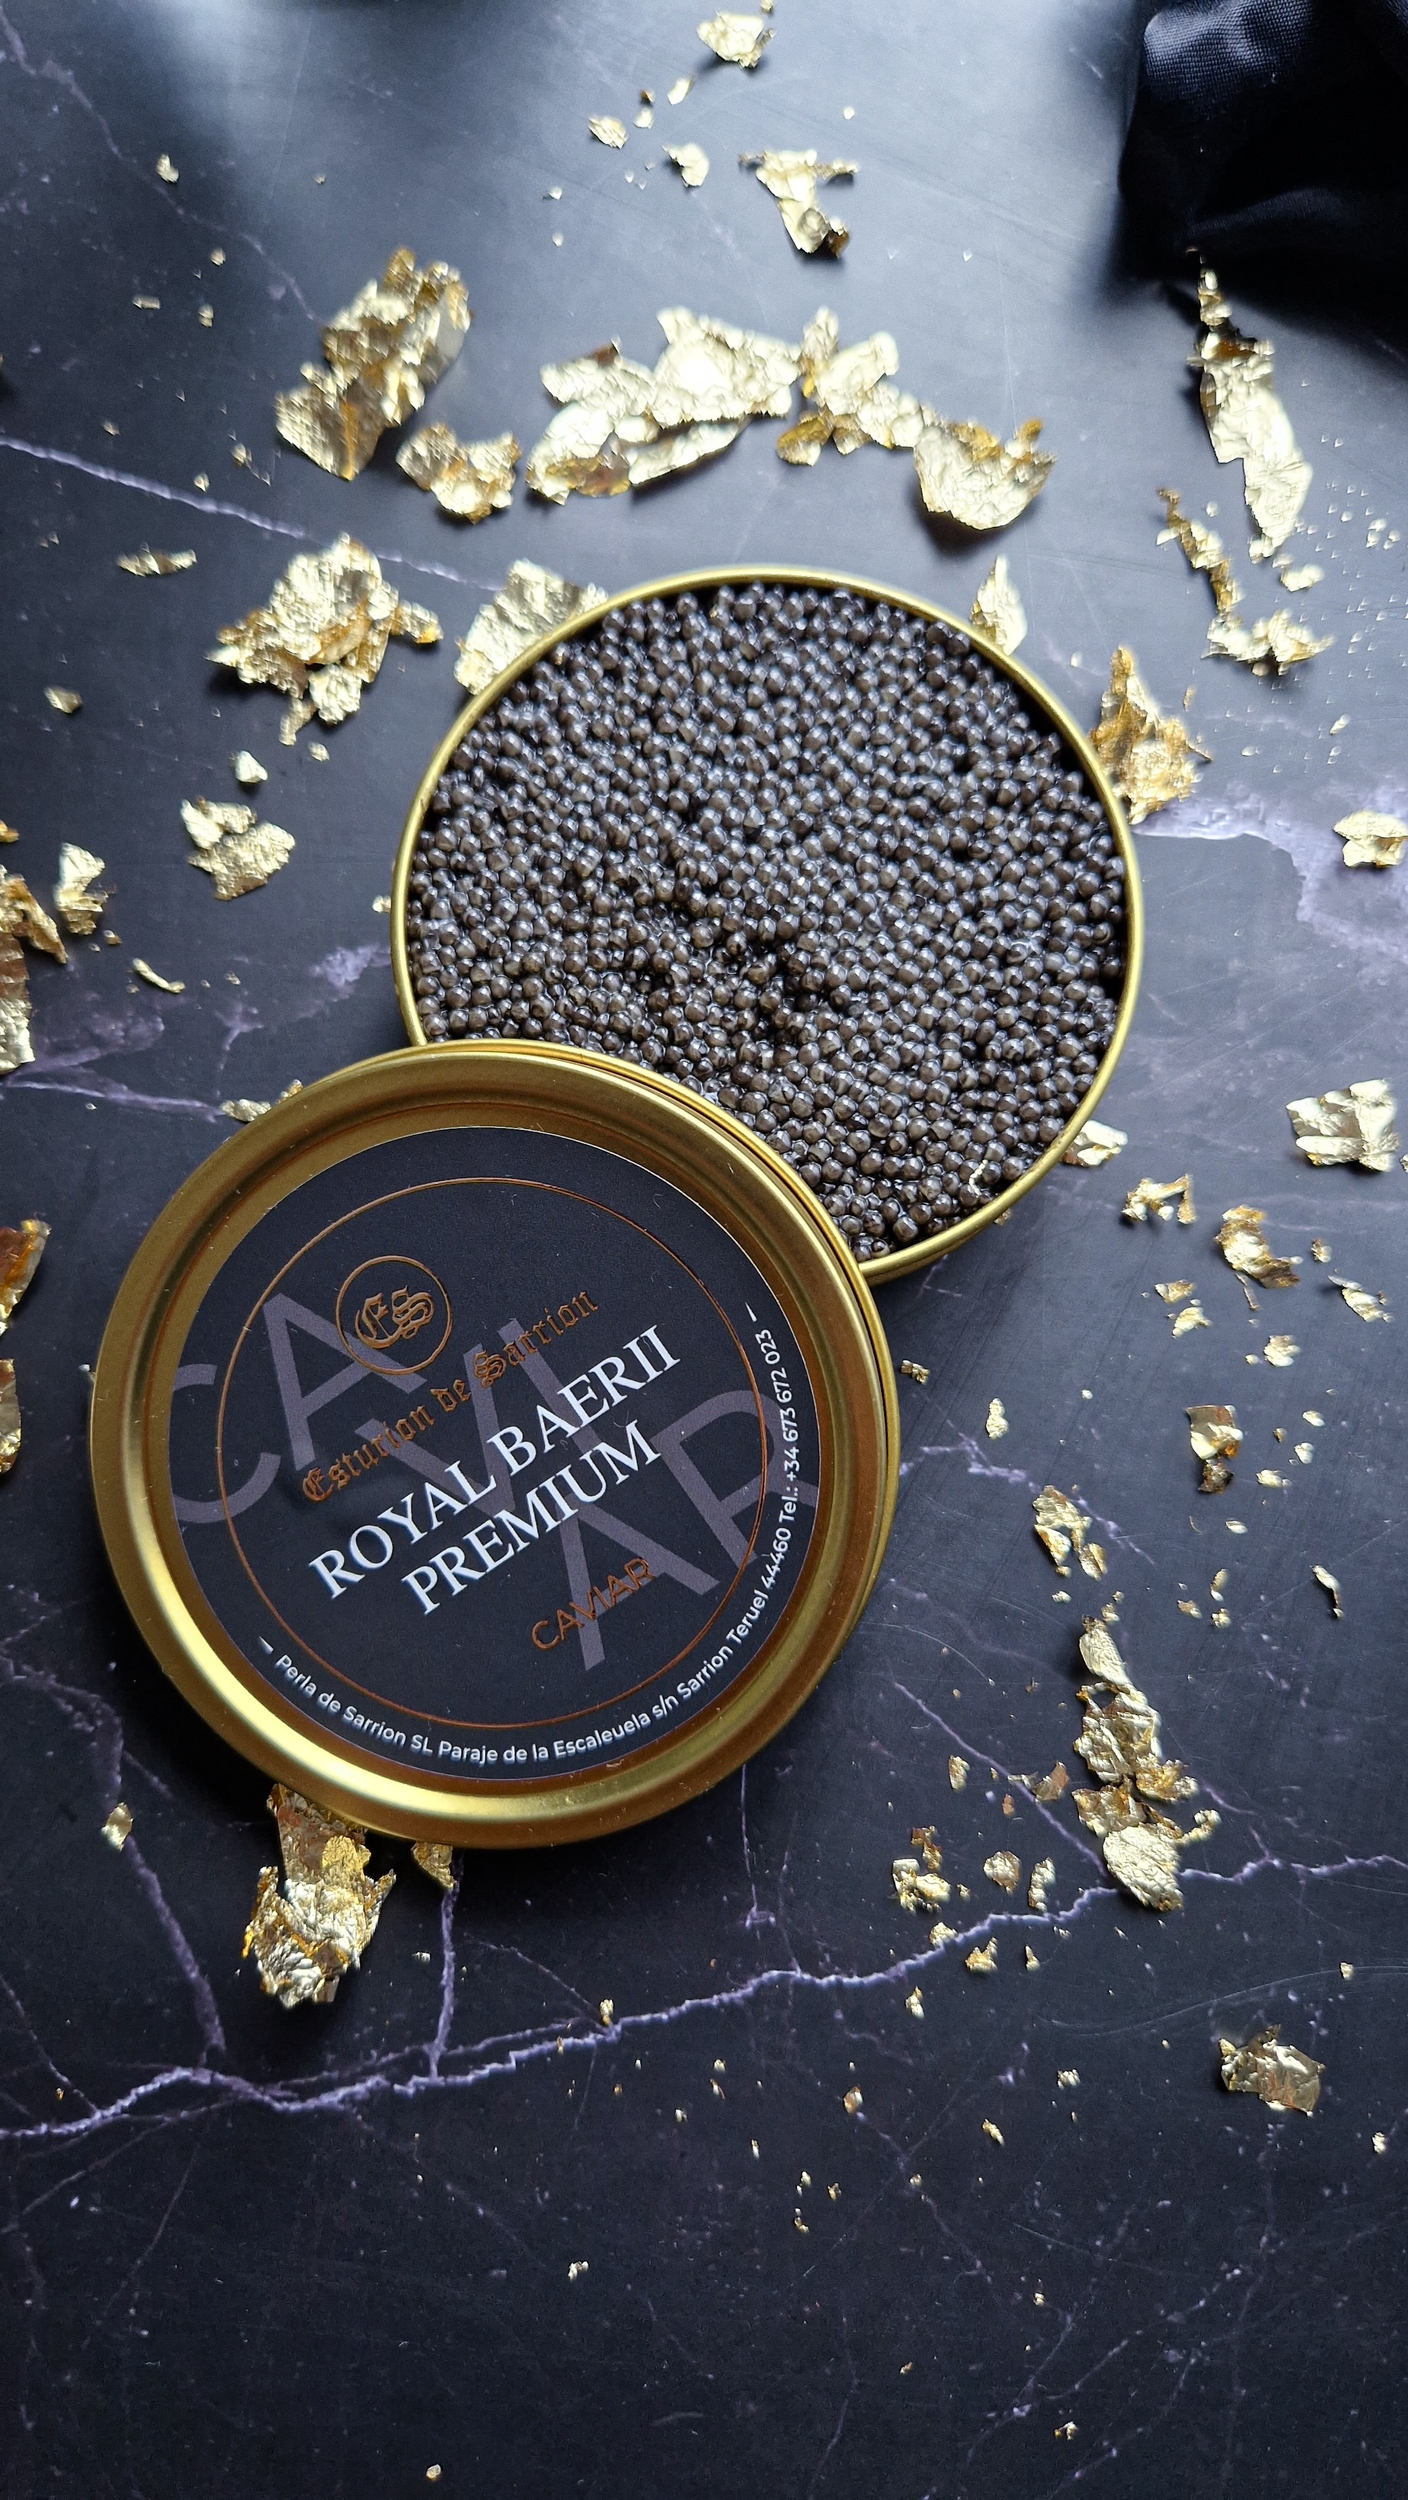 Caviar Premium (feuille d'or) Esturion de Sarrion www.luxfood-shop.fr